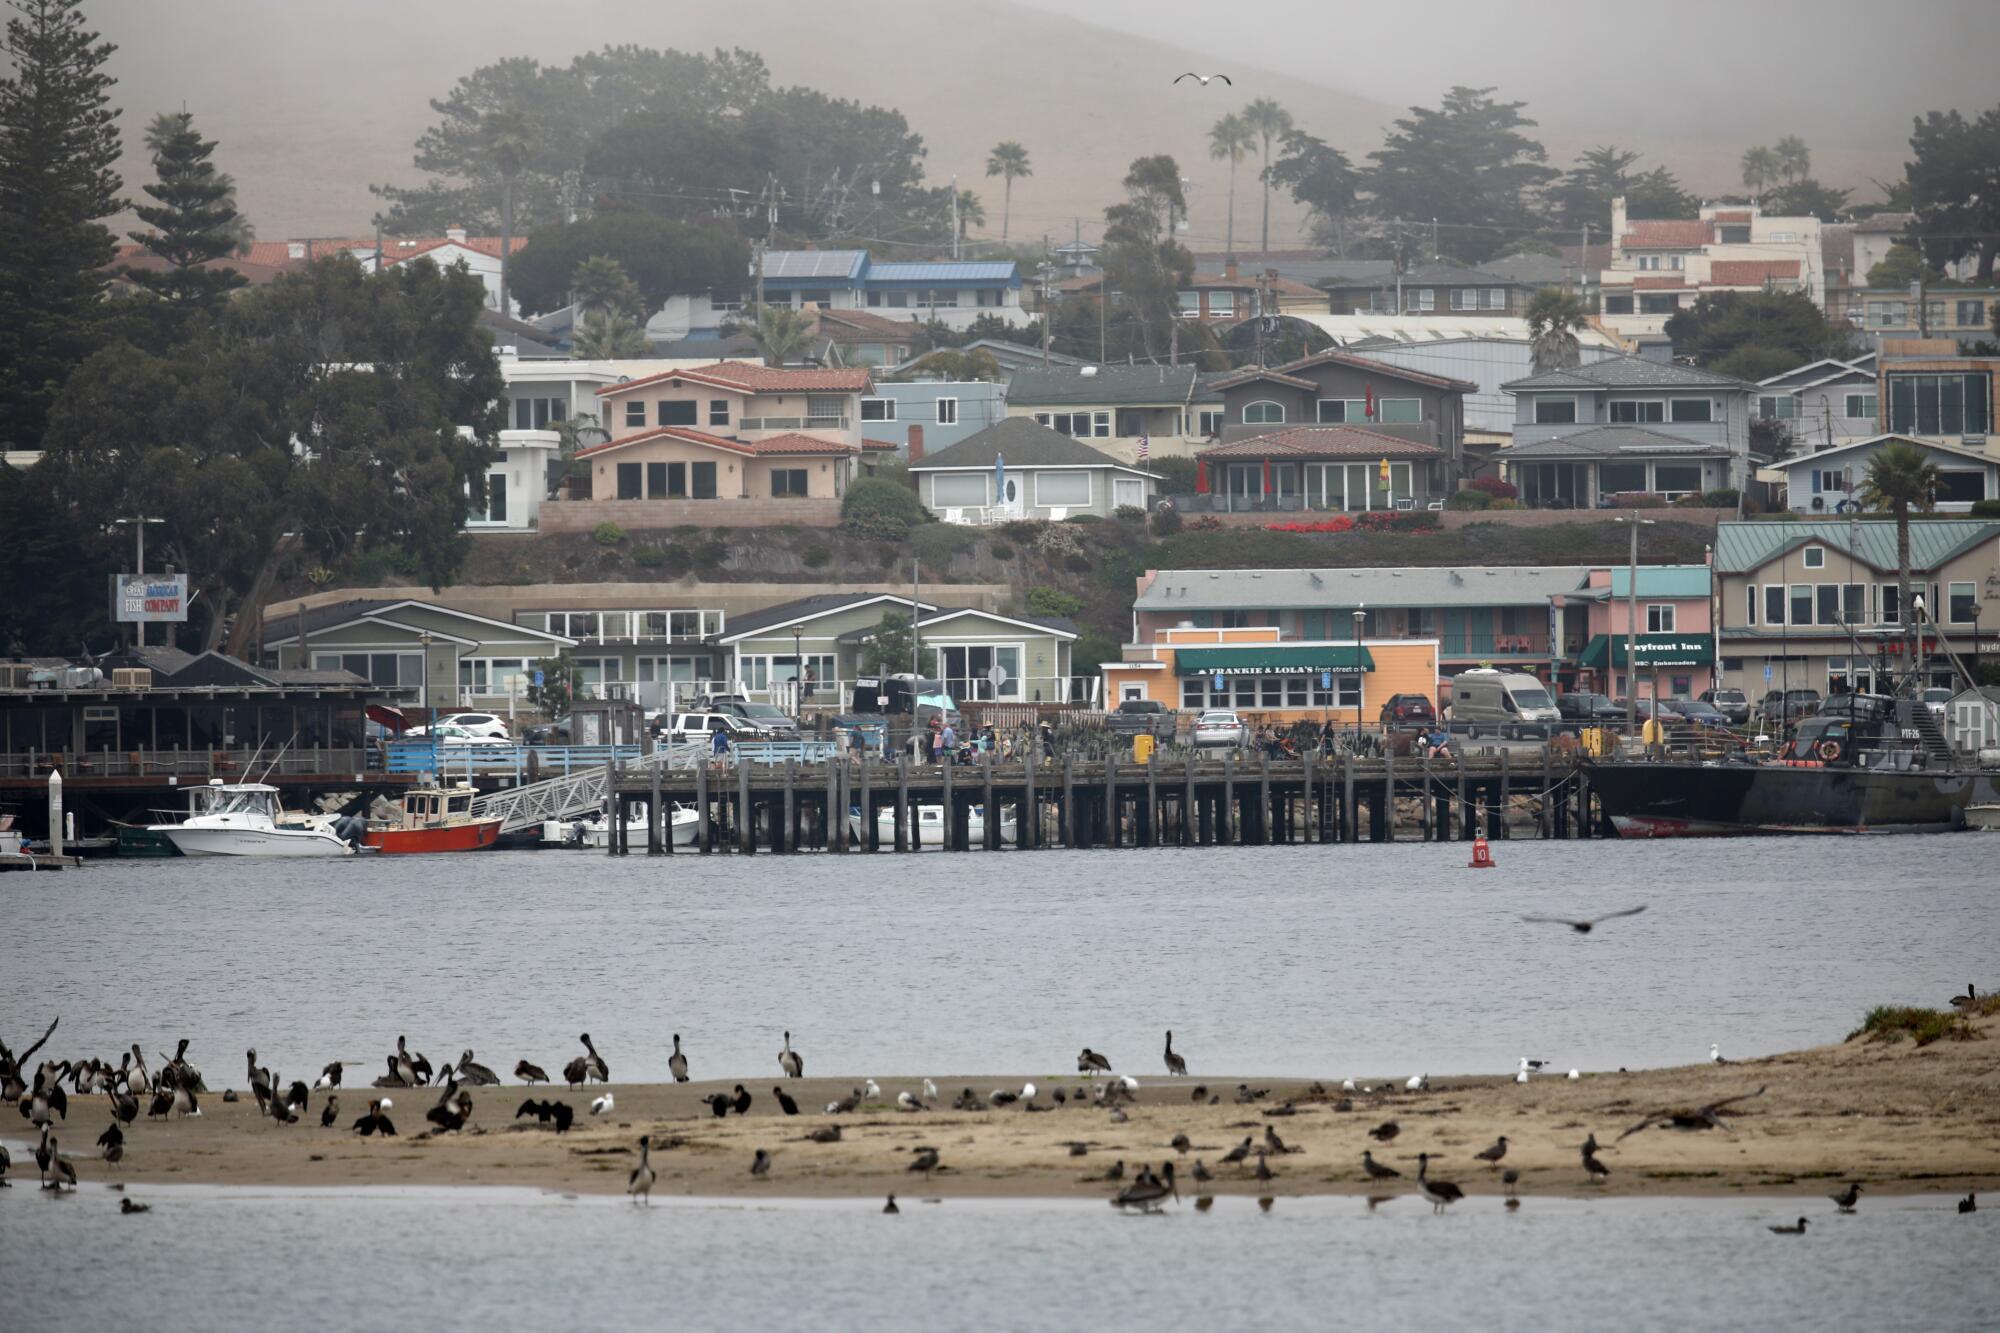 Houses line a bayfront as seabirds gather on a sandbar